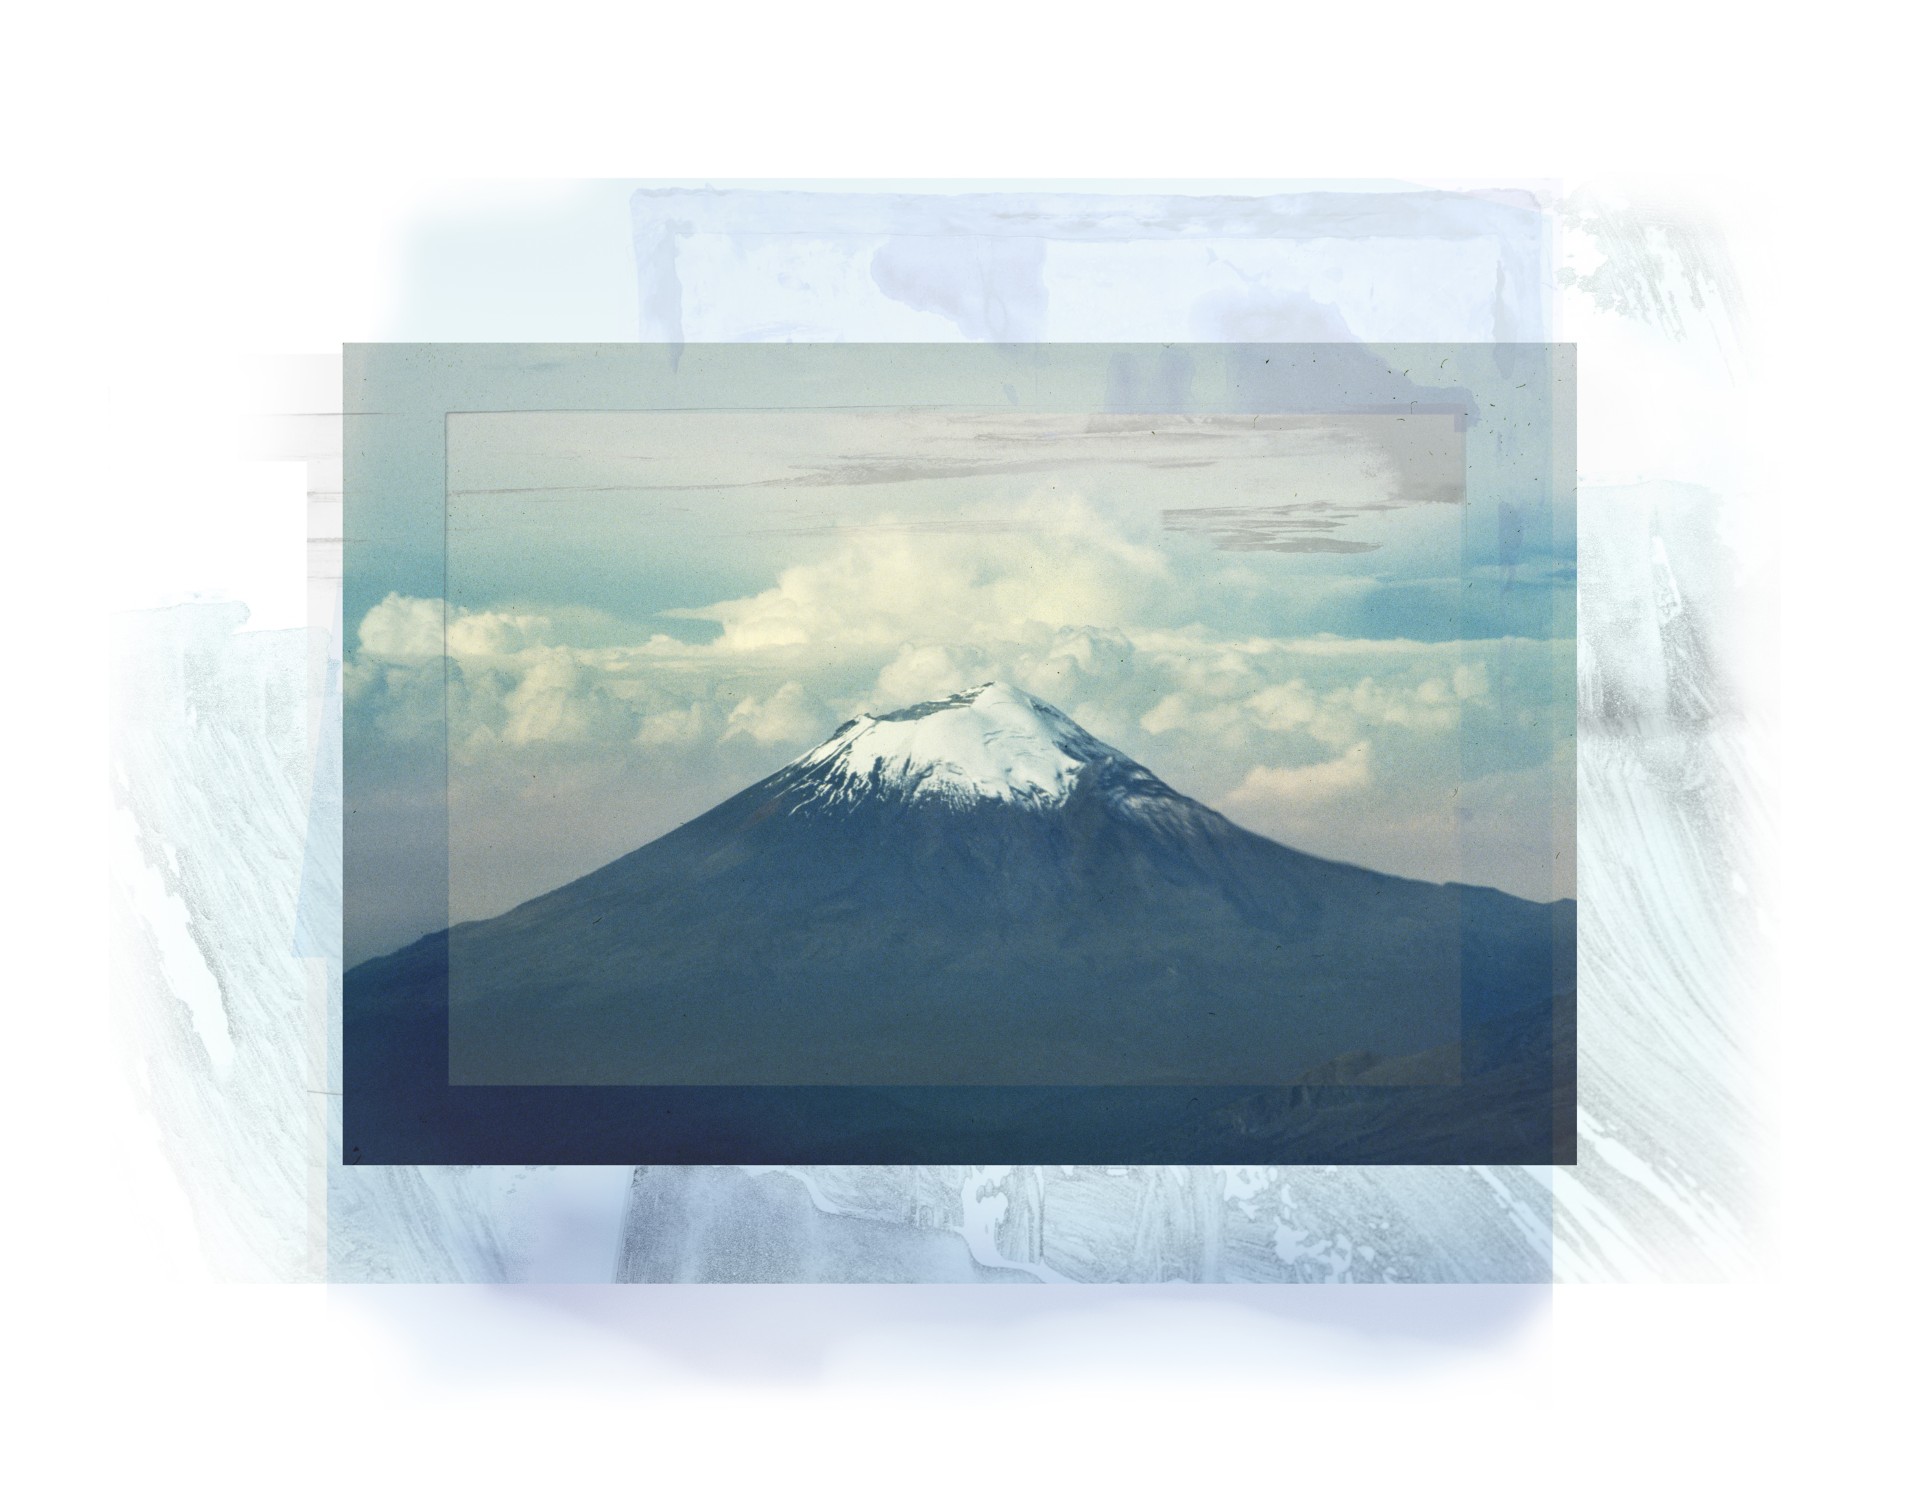 Popocatépetl (Montaña que humea) ©Miguel Soler-Roig